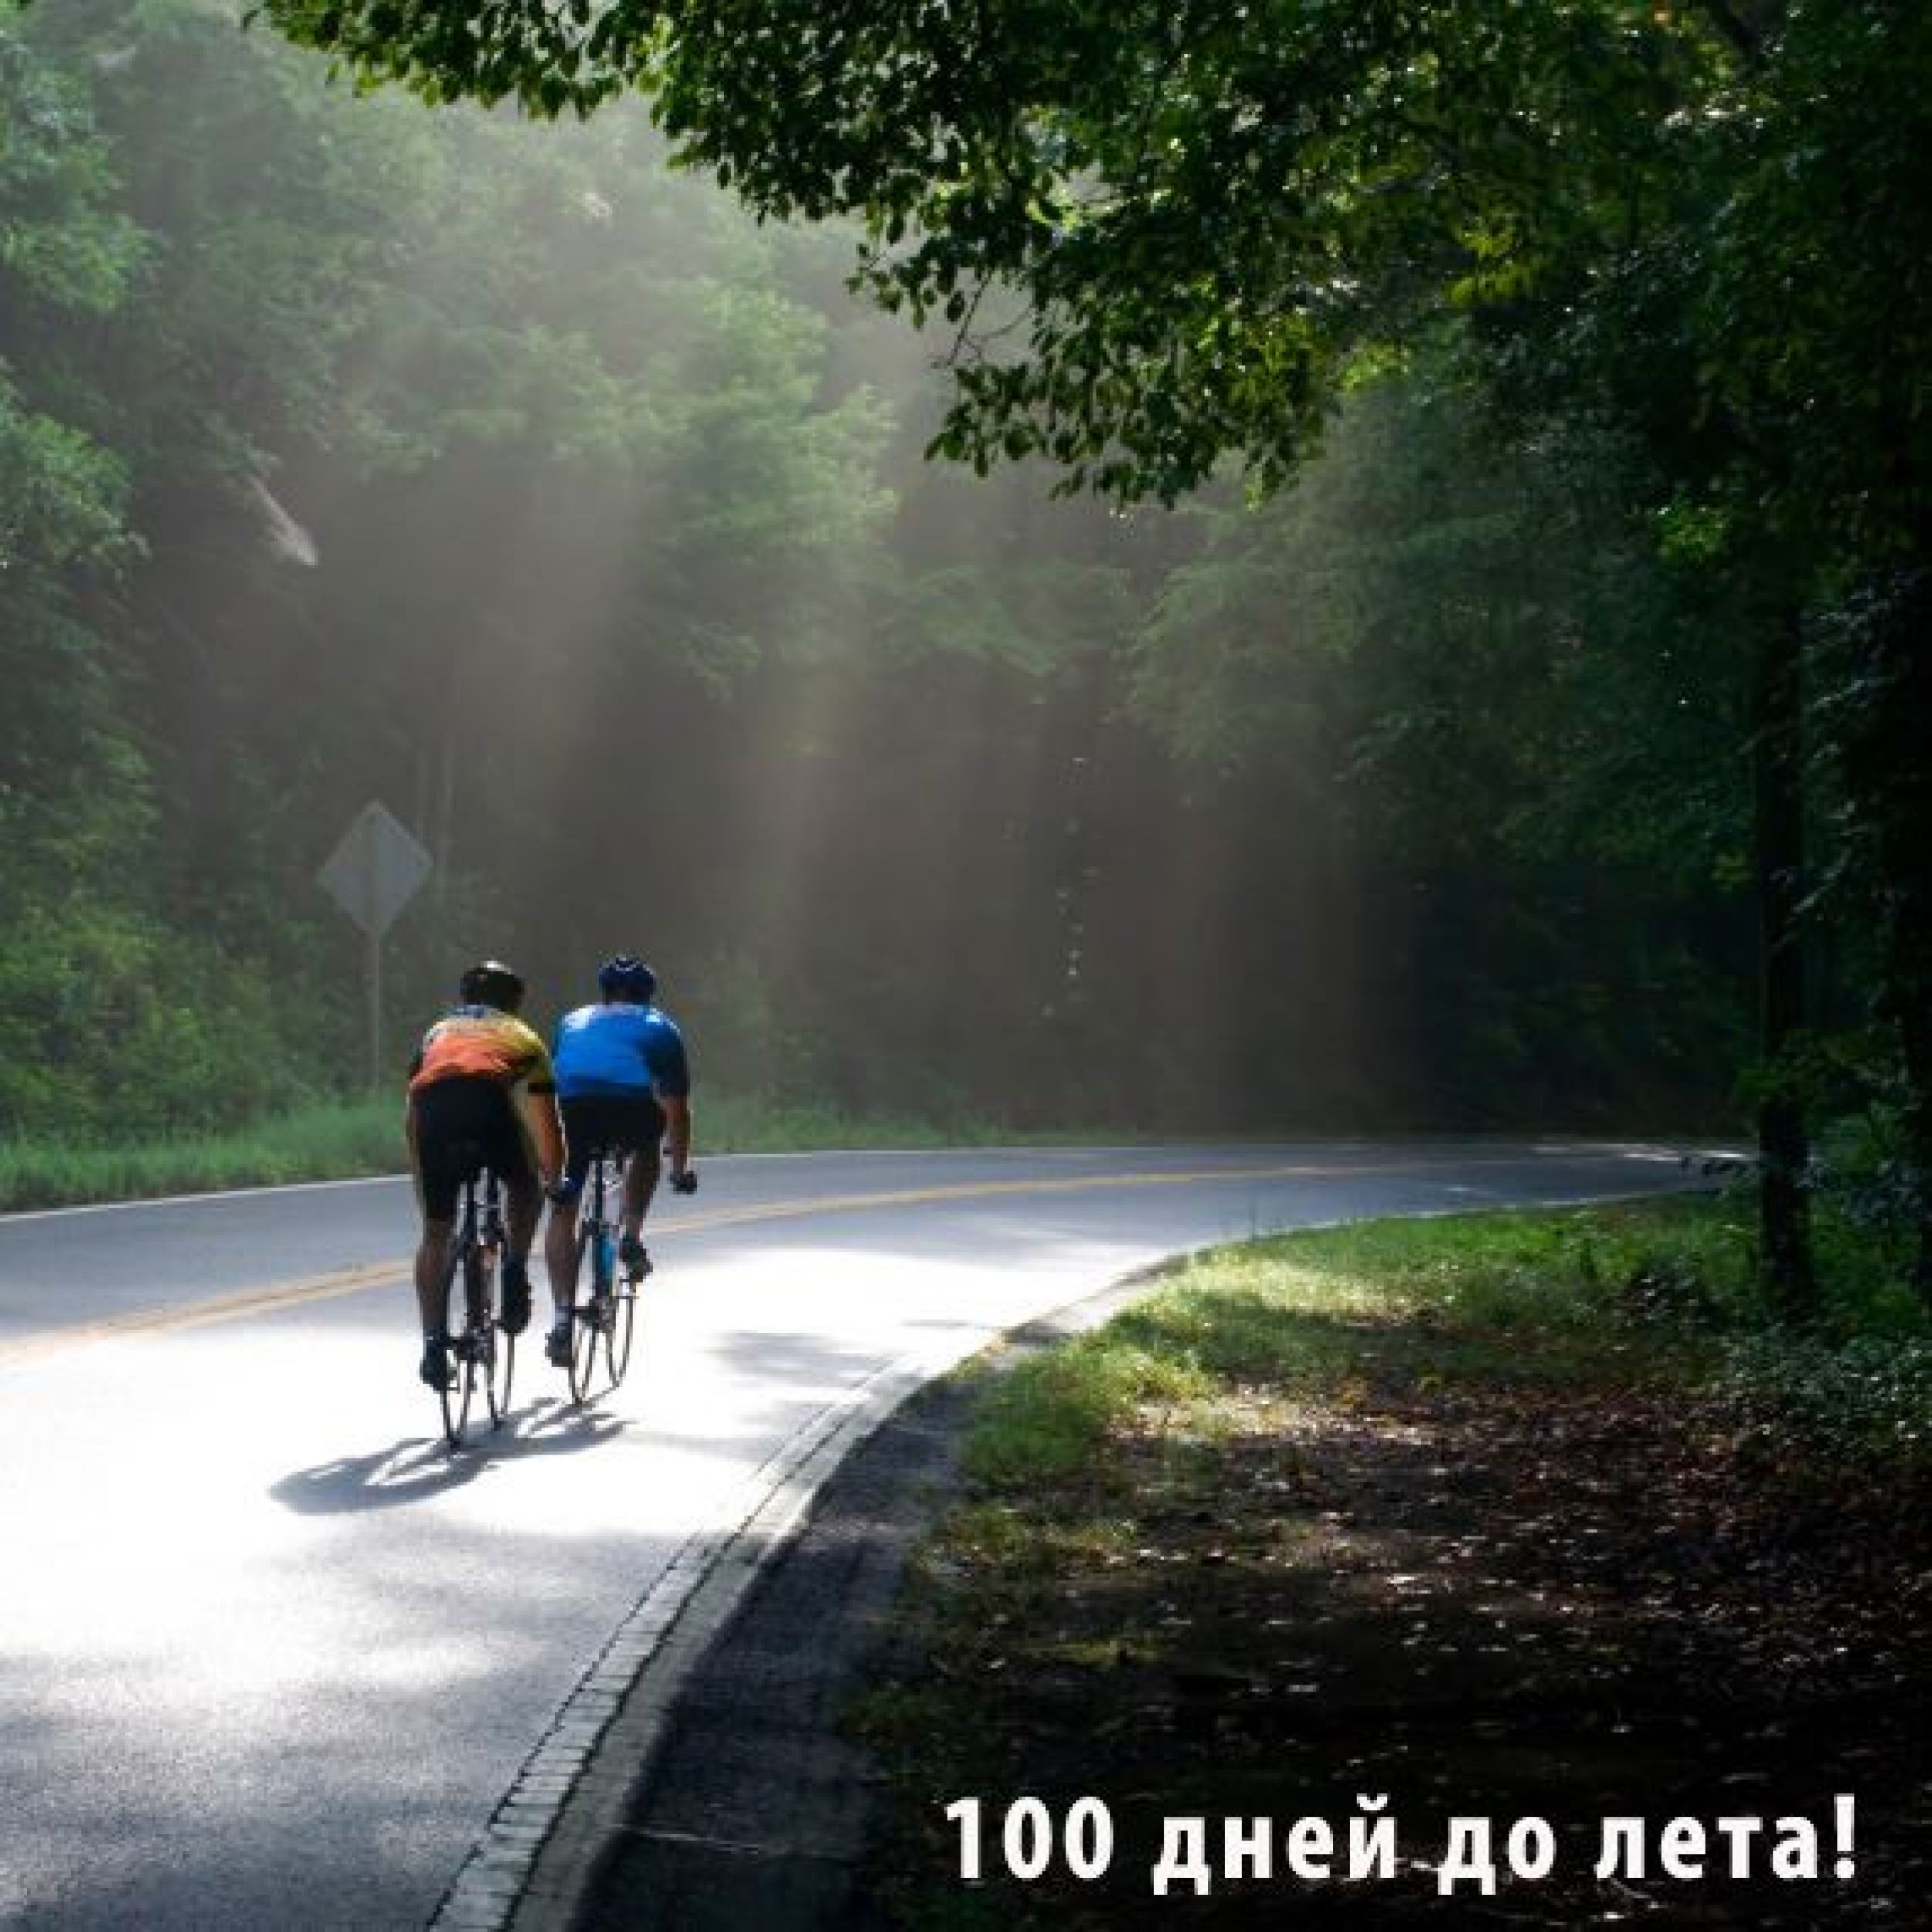 Едущий на велосипеде велосипедист. Велосипедист на дороге. Велосипедная дорожка в лесу. Велосипедист в лесу. Велопрогулки.